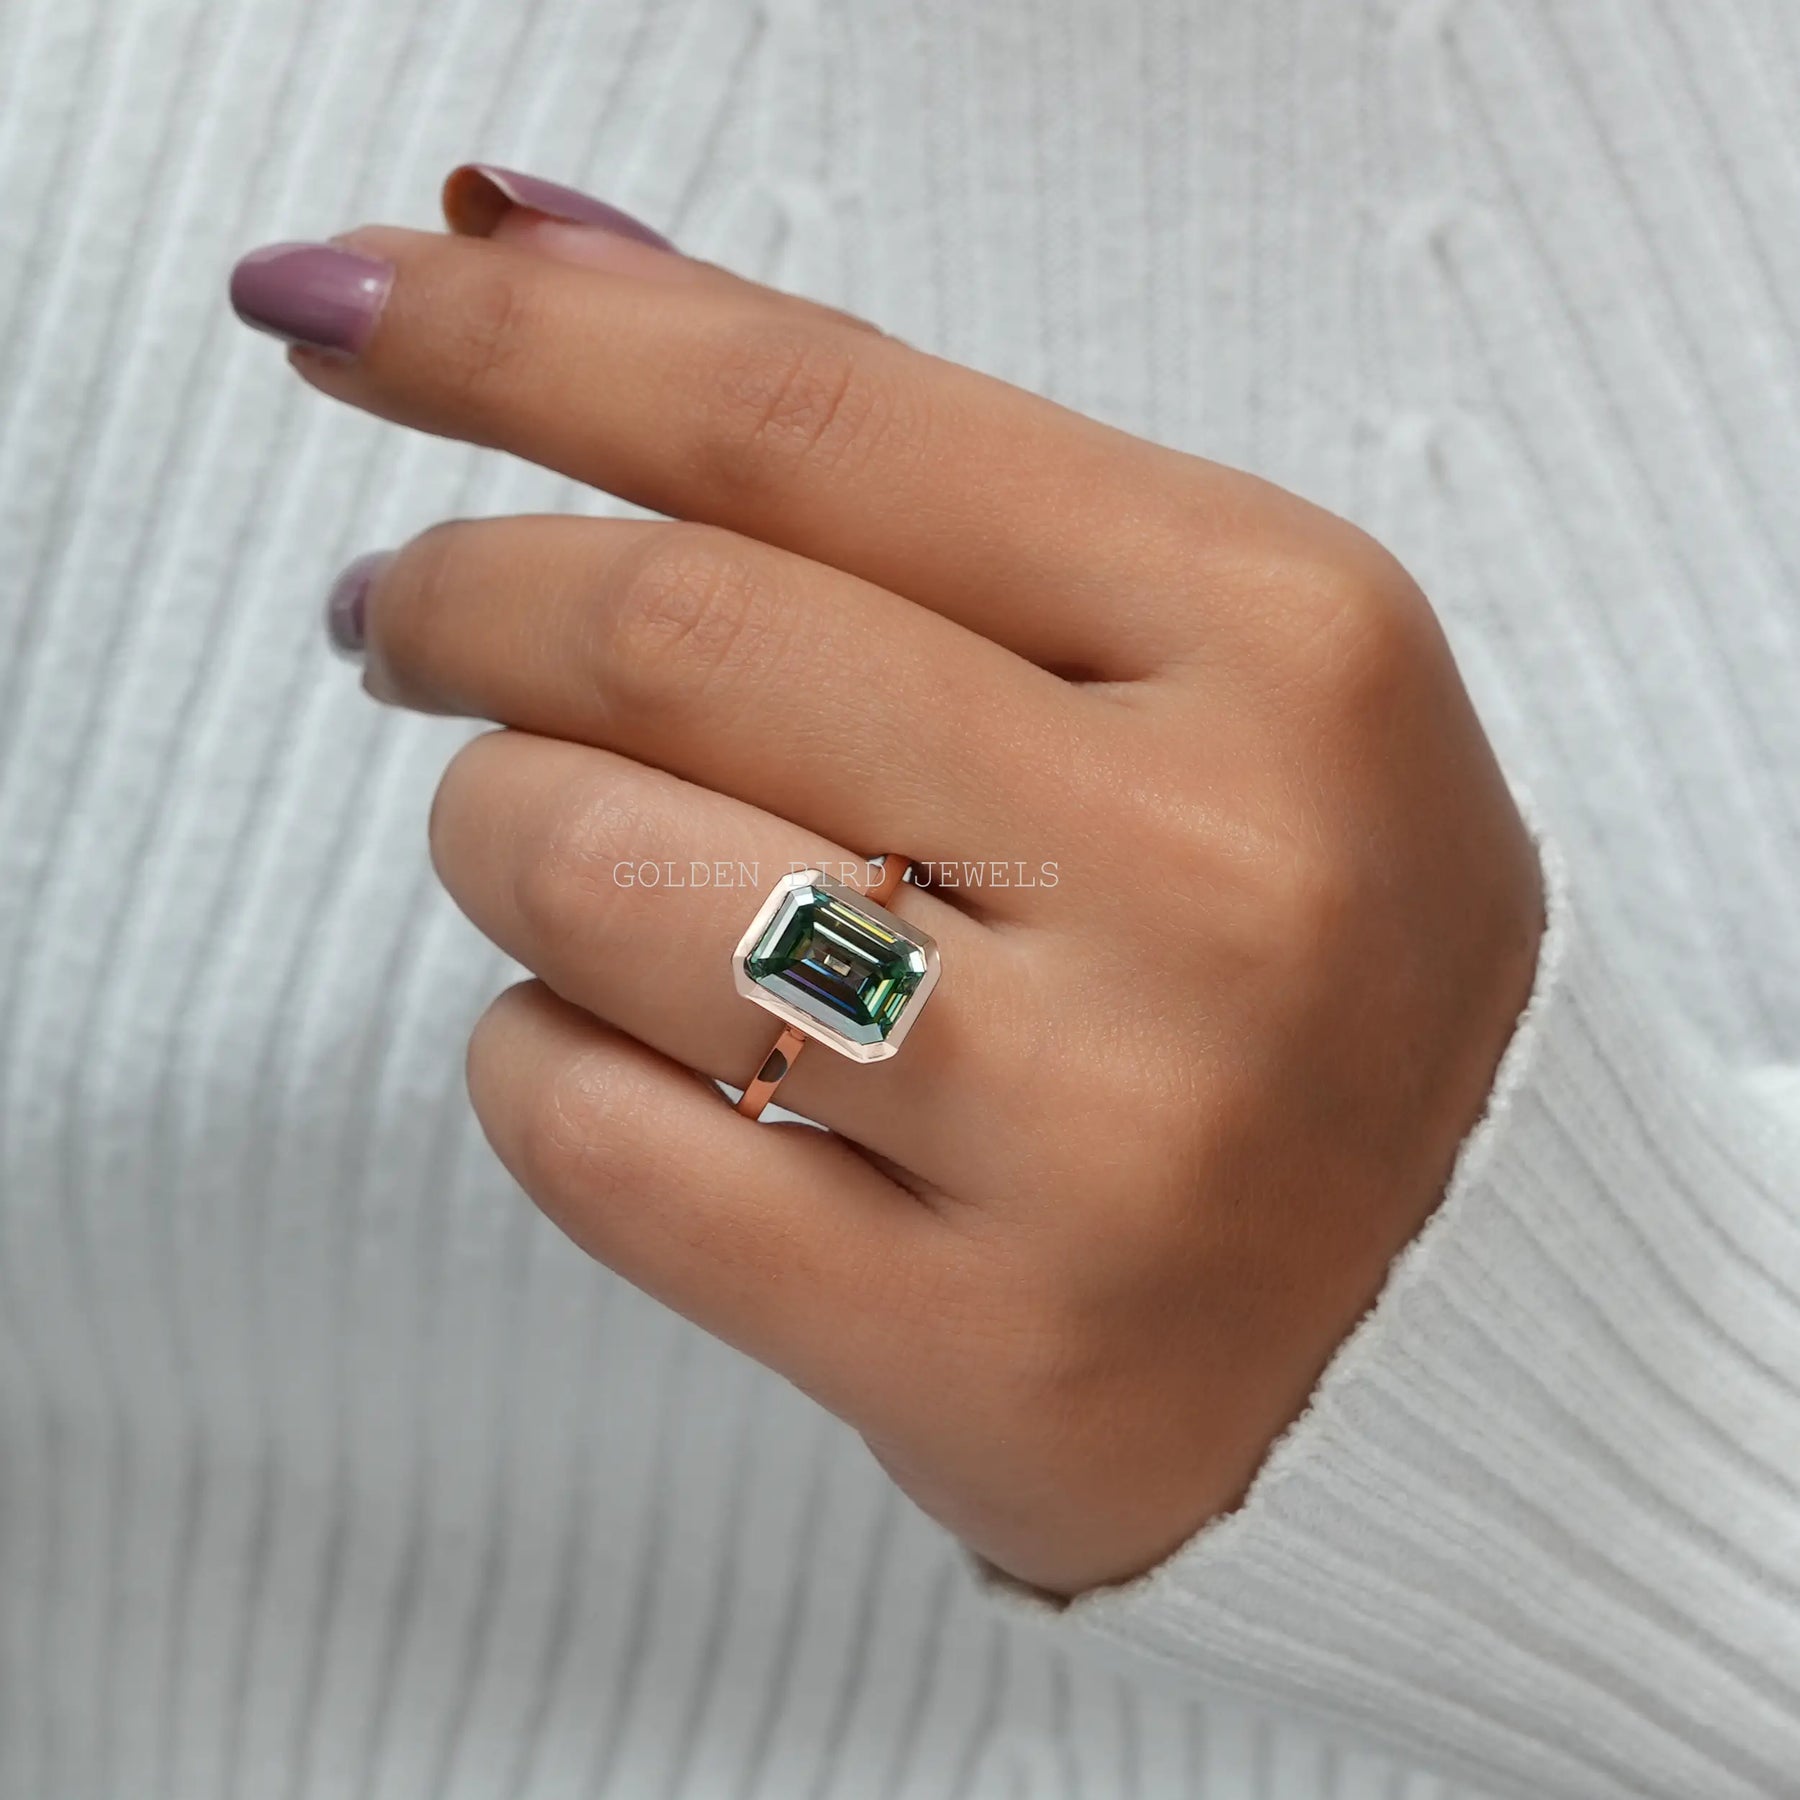 [Green Emerald Cut Bezel Set Moissanite Ring]-[Golden Bird Jewels]